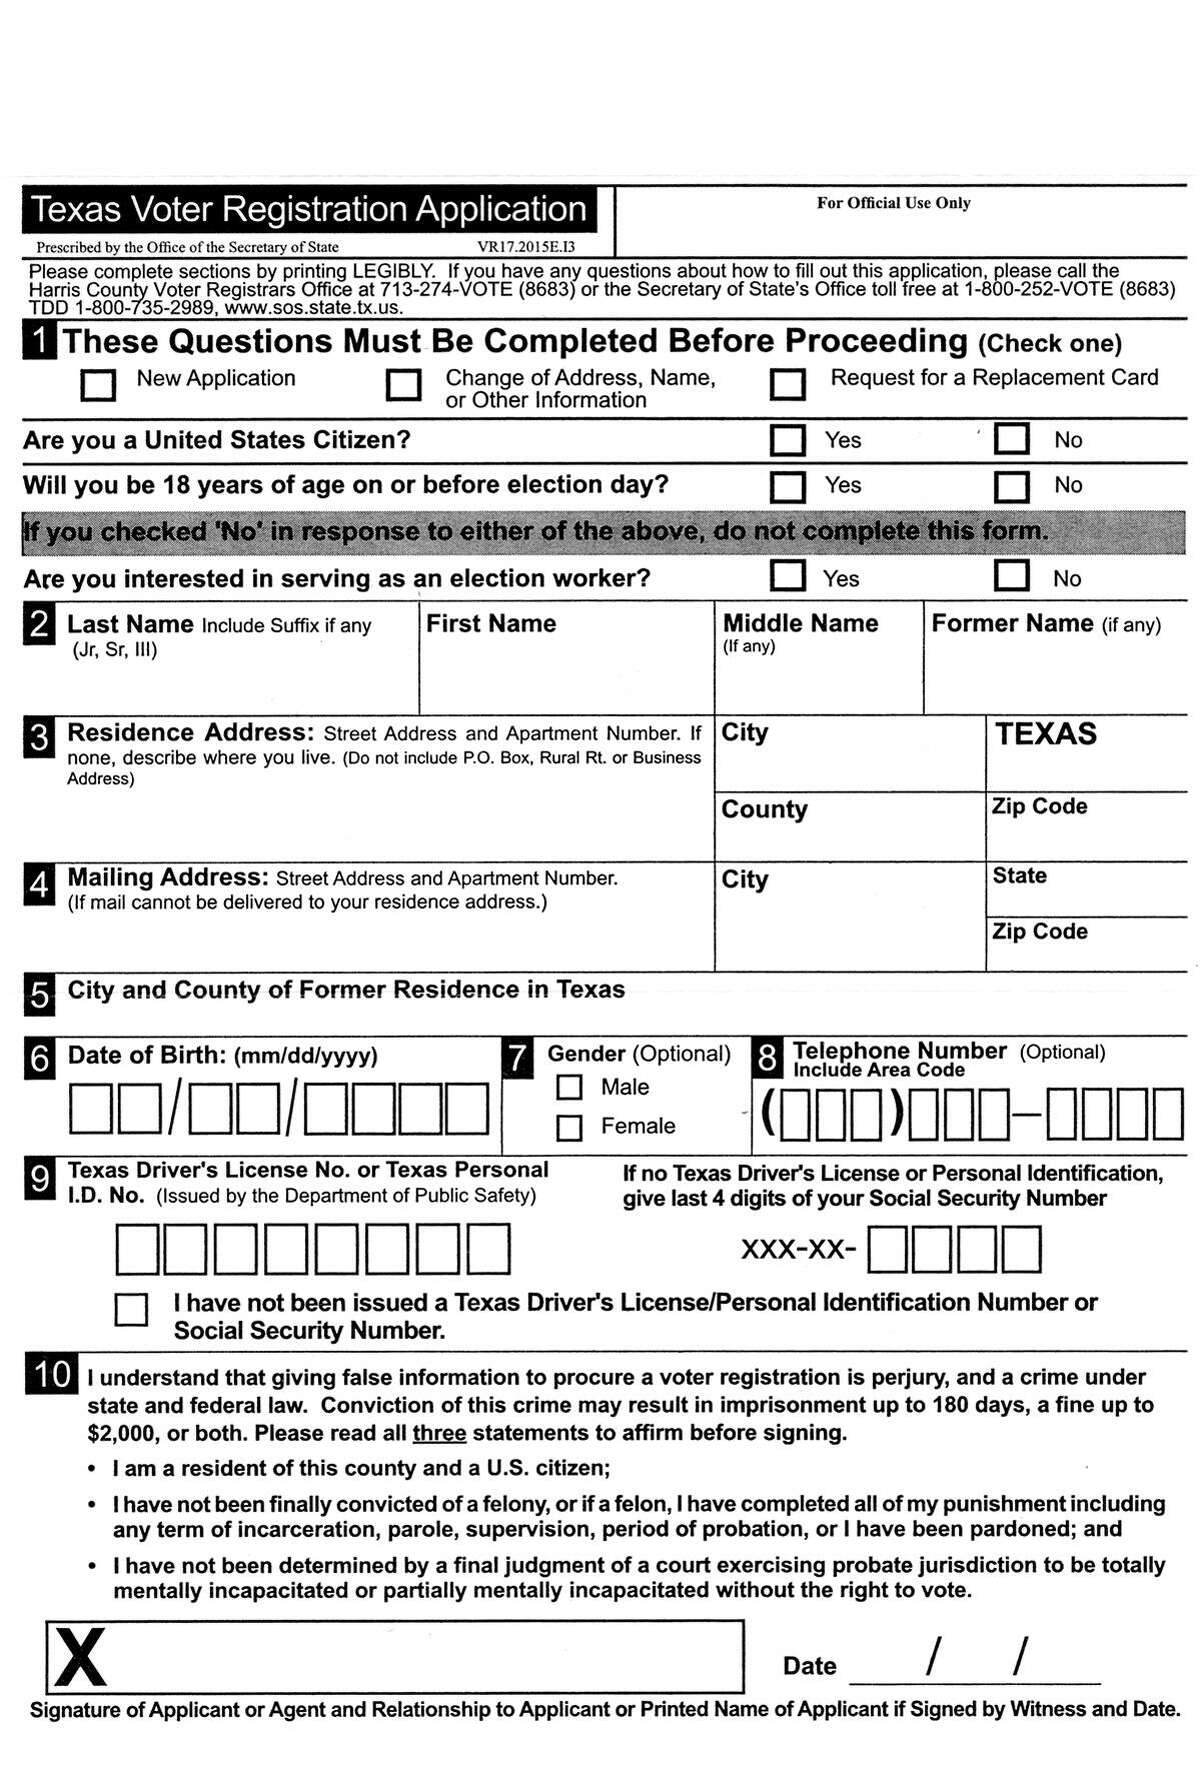 Scan of cardboard TX Voter Registration application